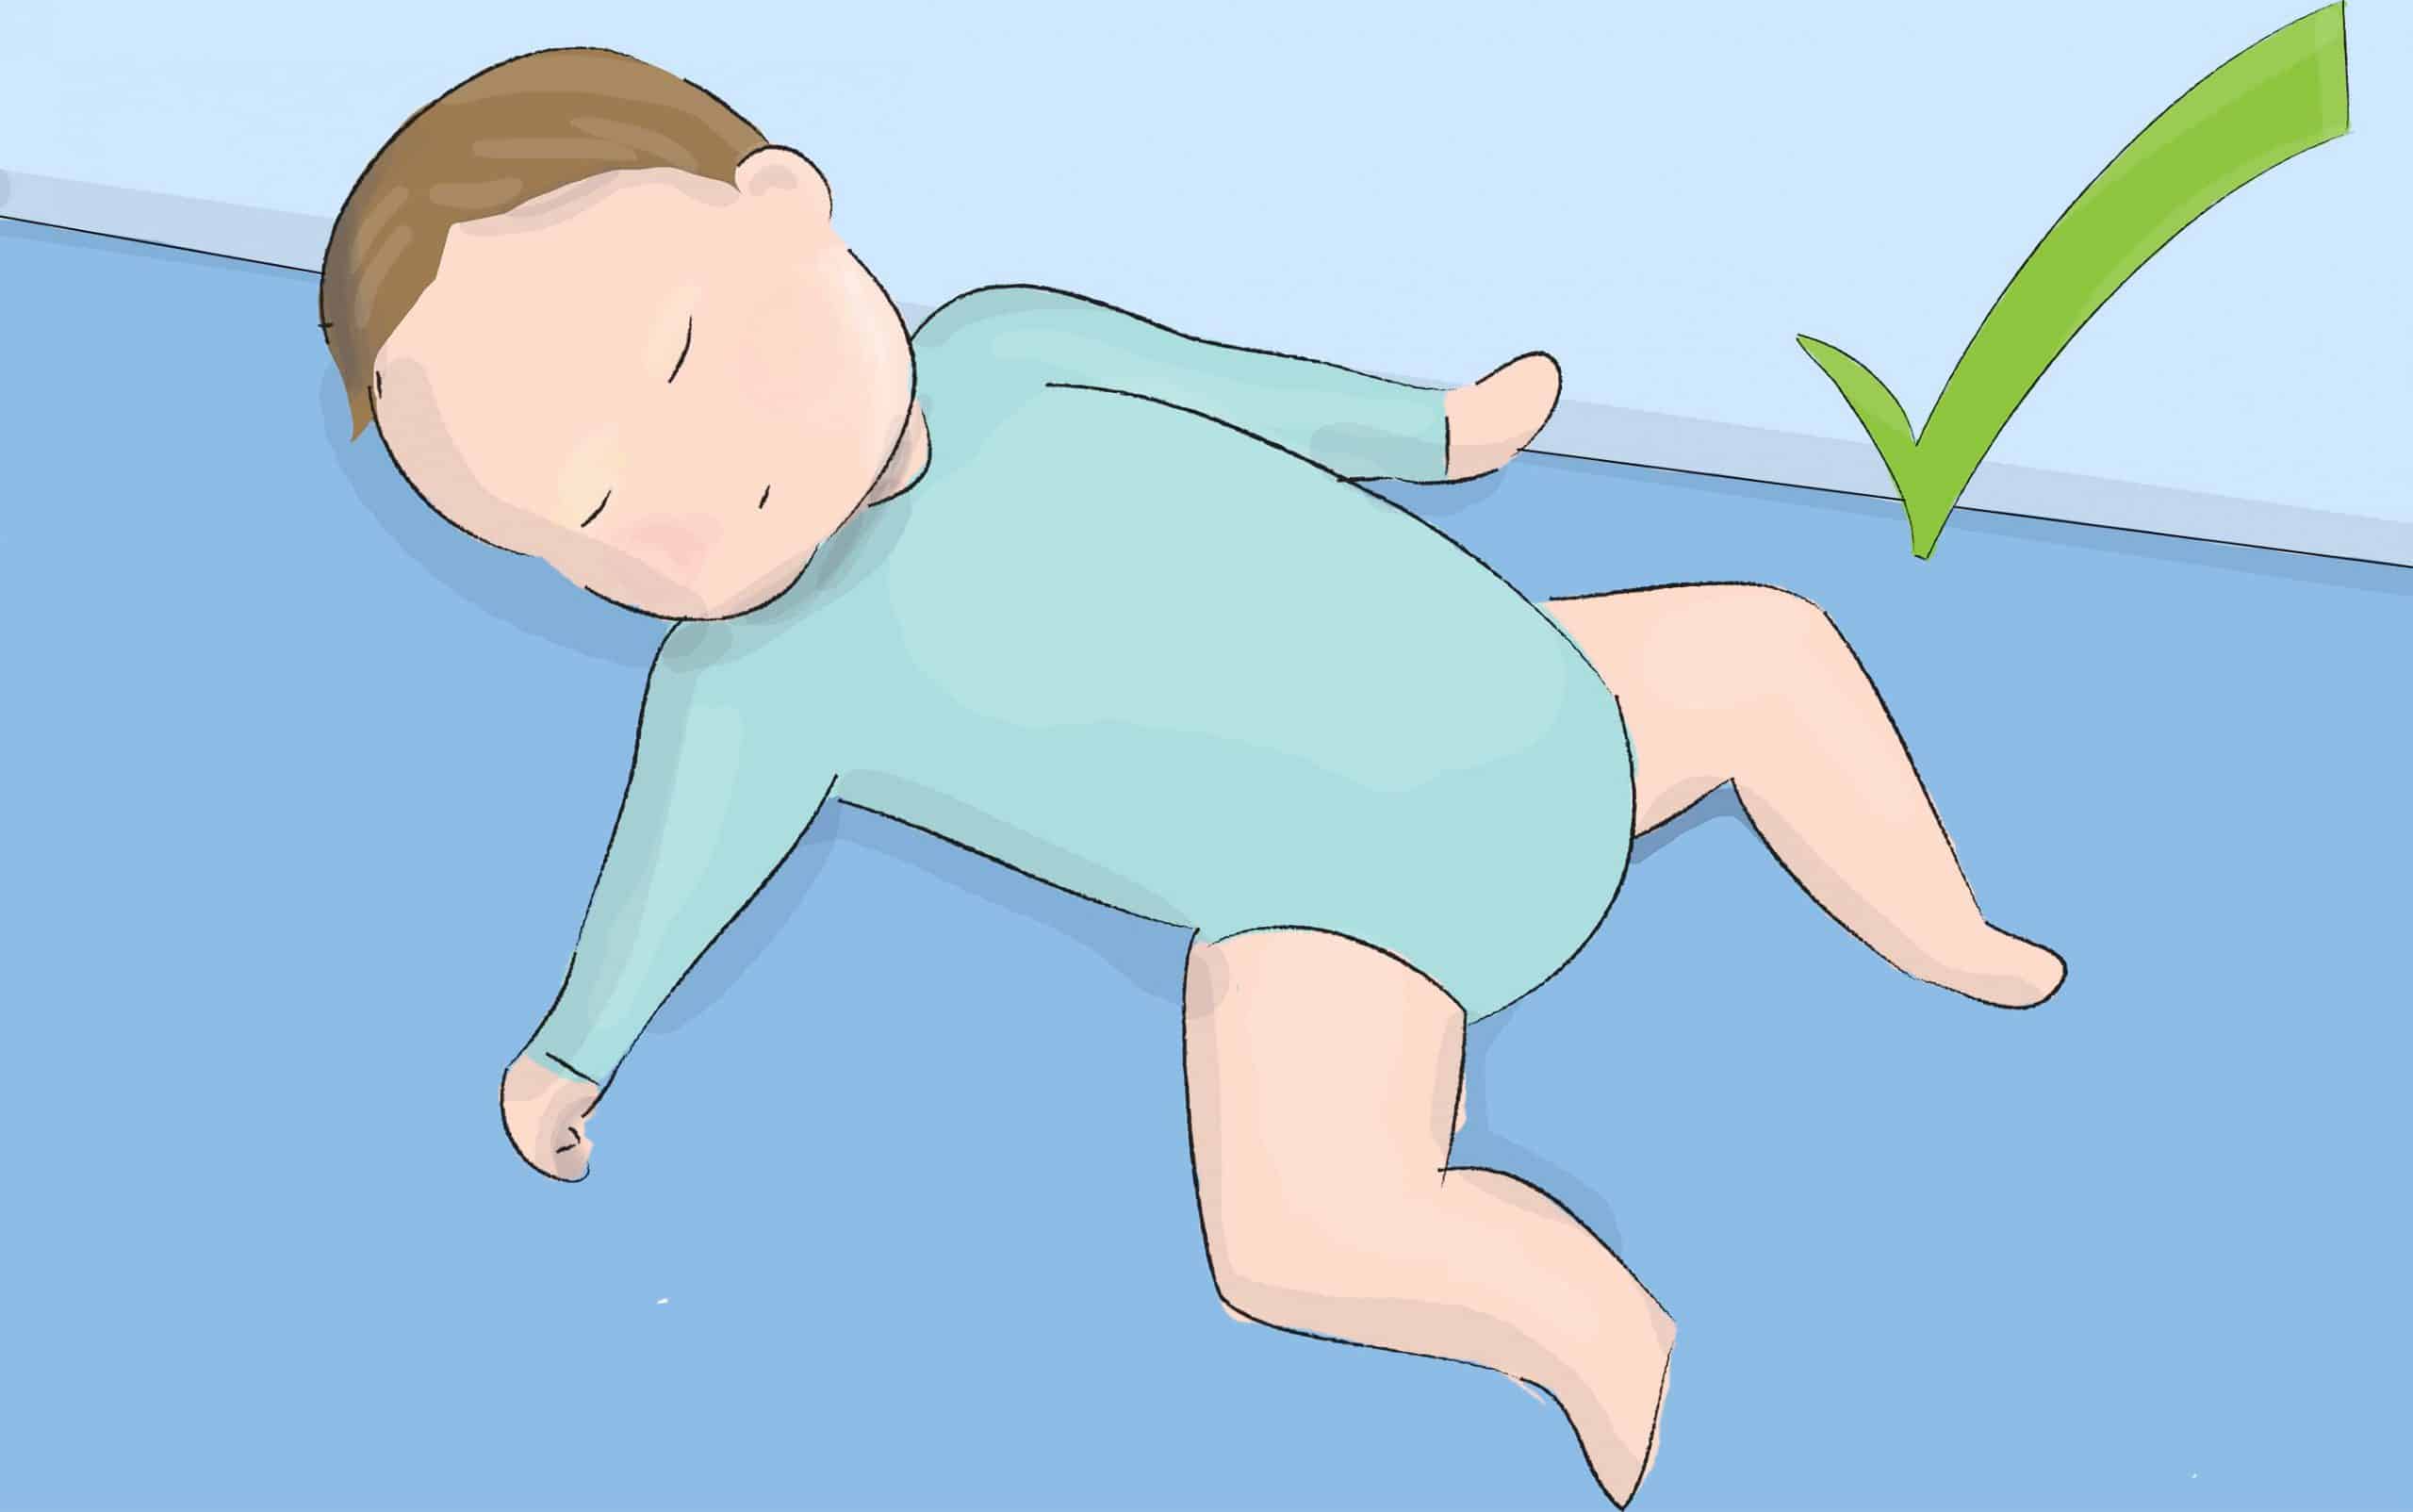 הנחת תינוקות לשינה על גבם יכולה להפחית משמעותית את הסיכון למוות פתאומי בלתי צפוי